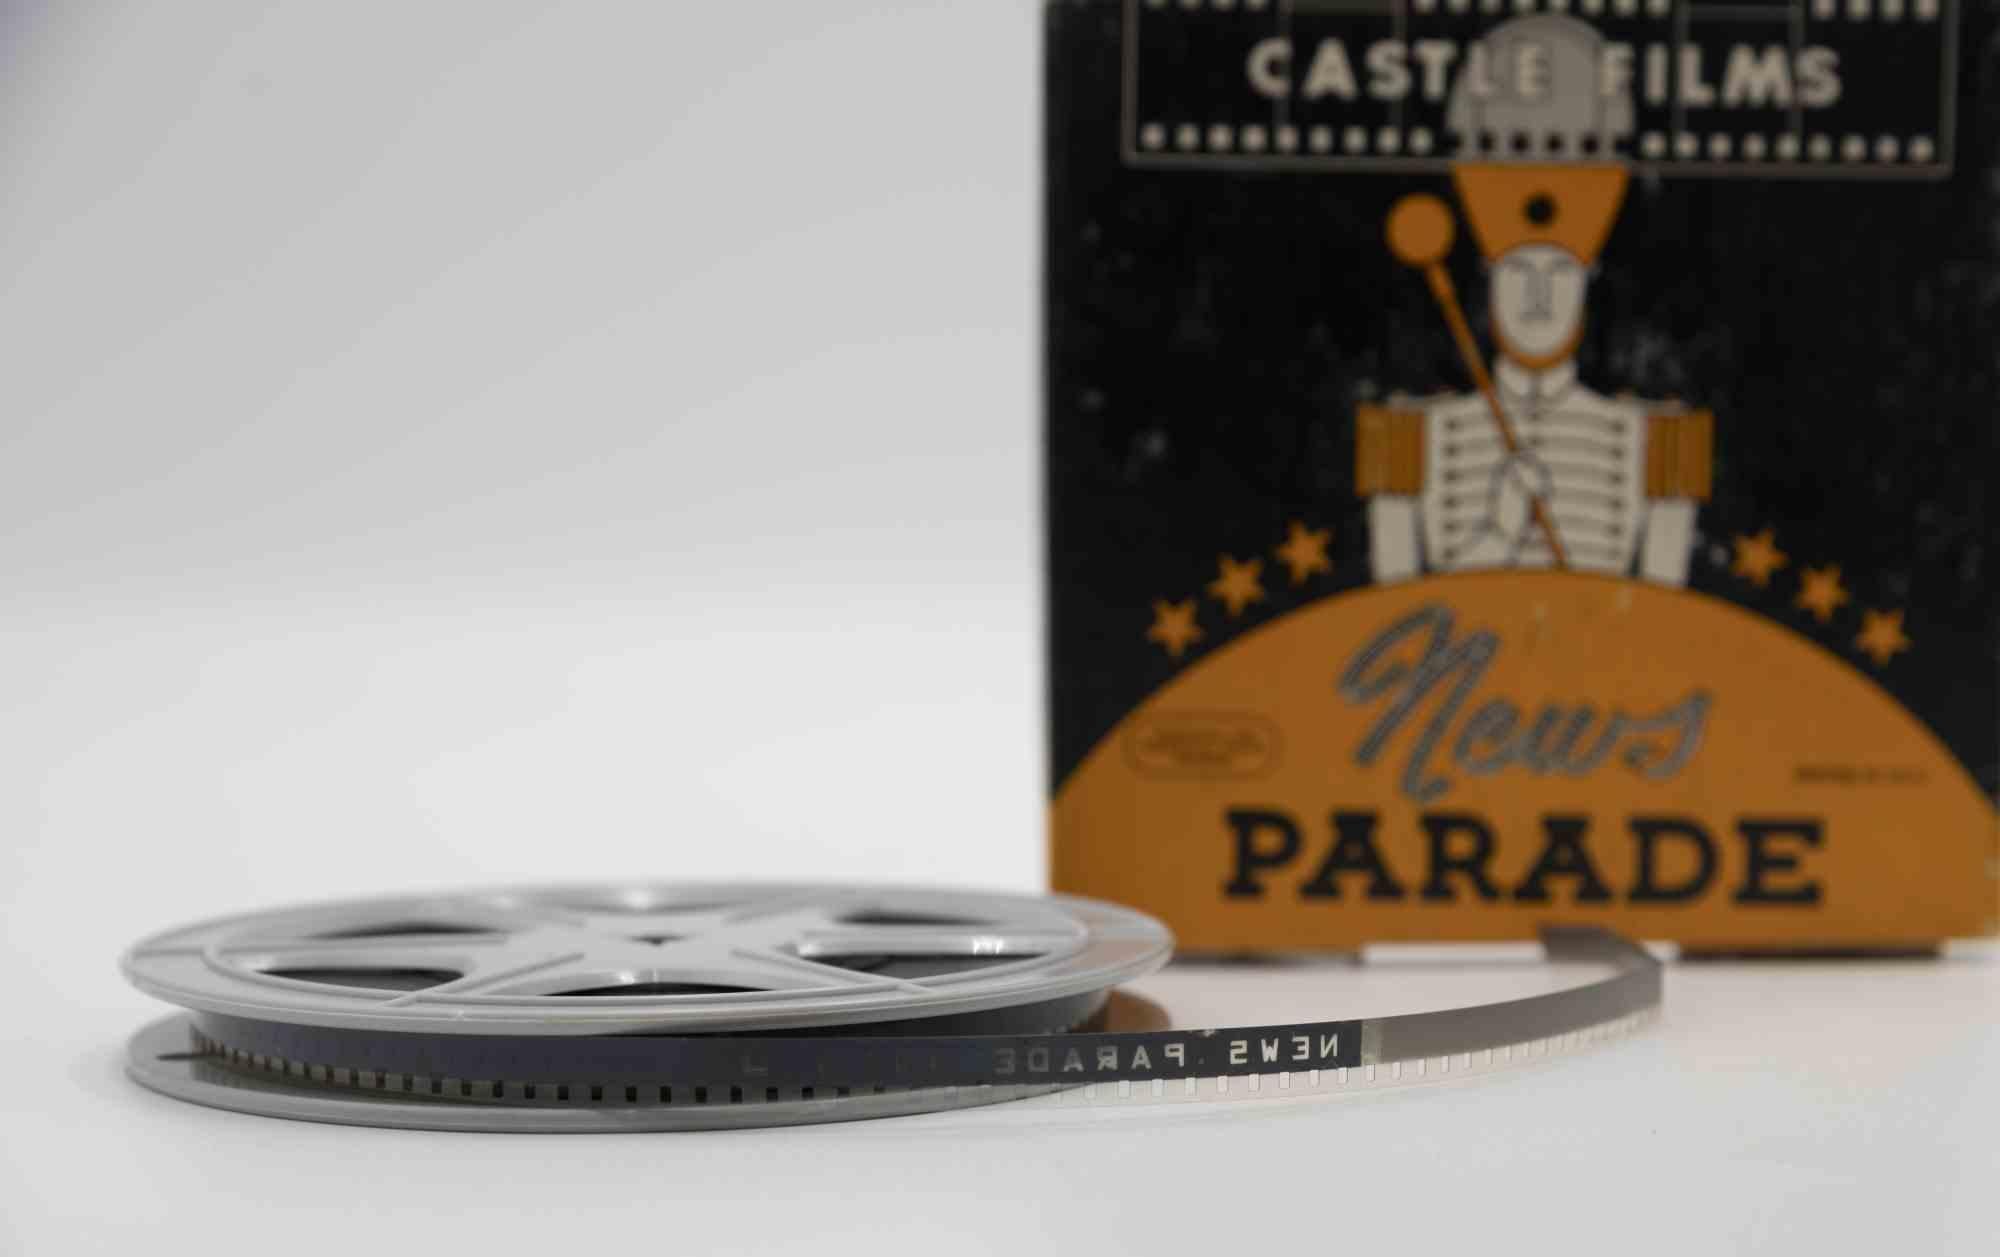 News Parade ist ein Originalfilm aus den 1940er Jahren.

Sie enthält die Originalverpackung.

8mm oder 16mm.

Gute Bedingungen. 